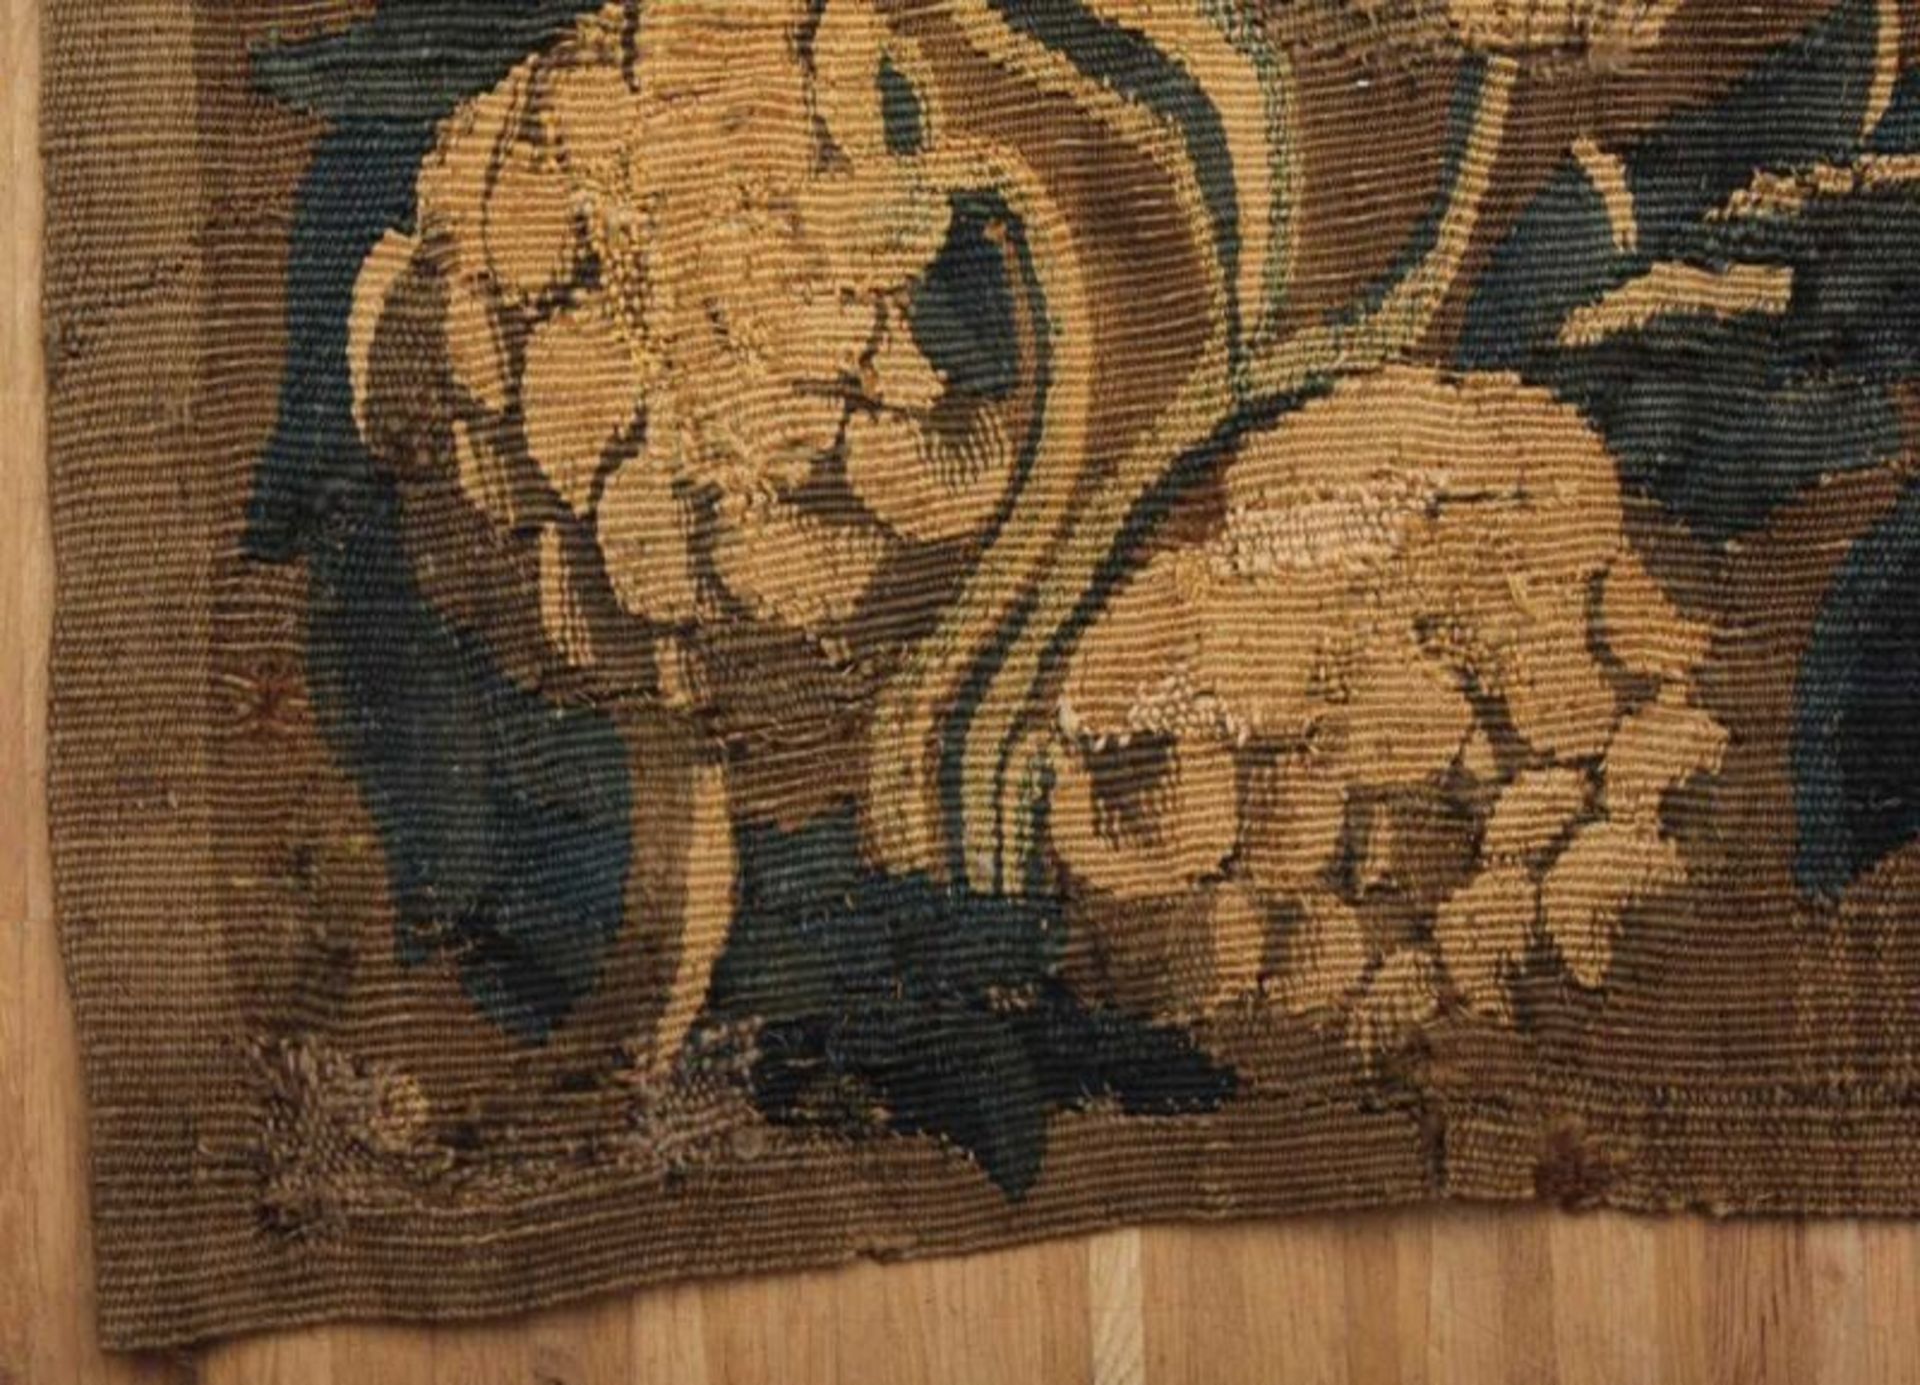 TAPISSERIE, Wolle, gefärbt und gewirkt, aus Fragmenten eines ehemals größeren Gobelins - Bild 3 aus 3